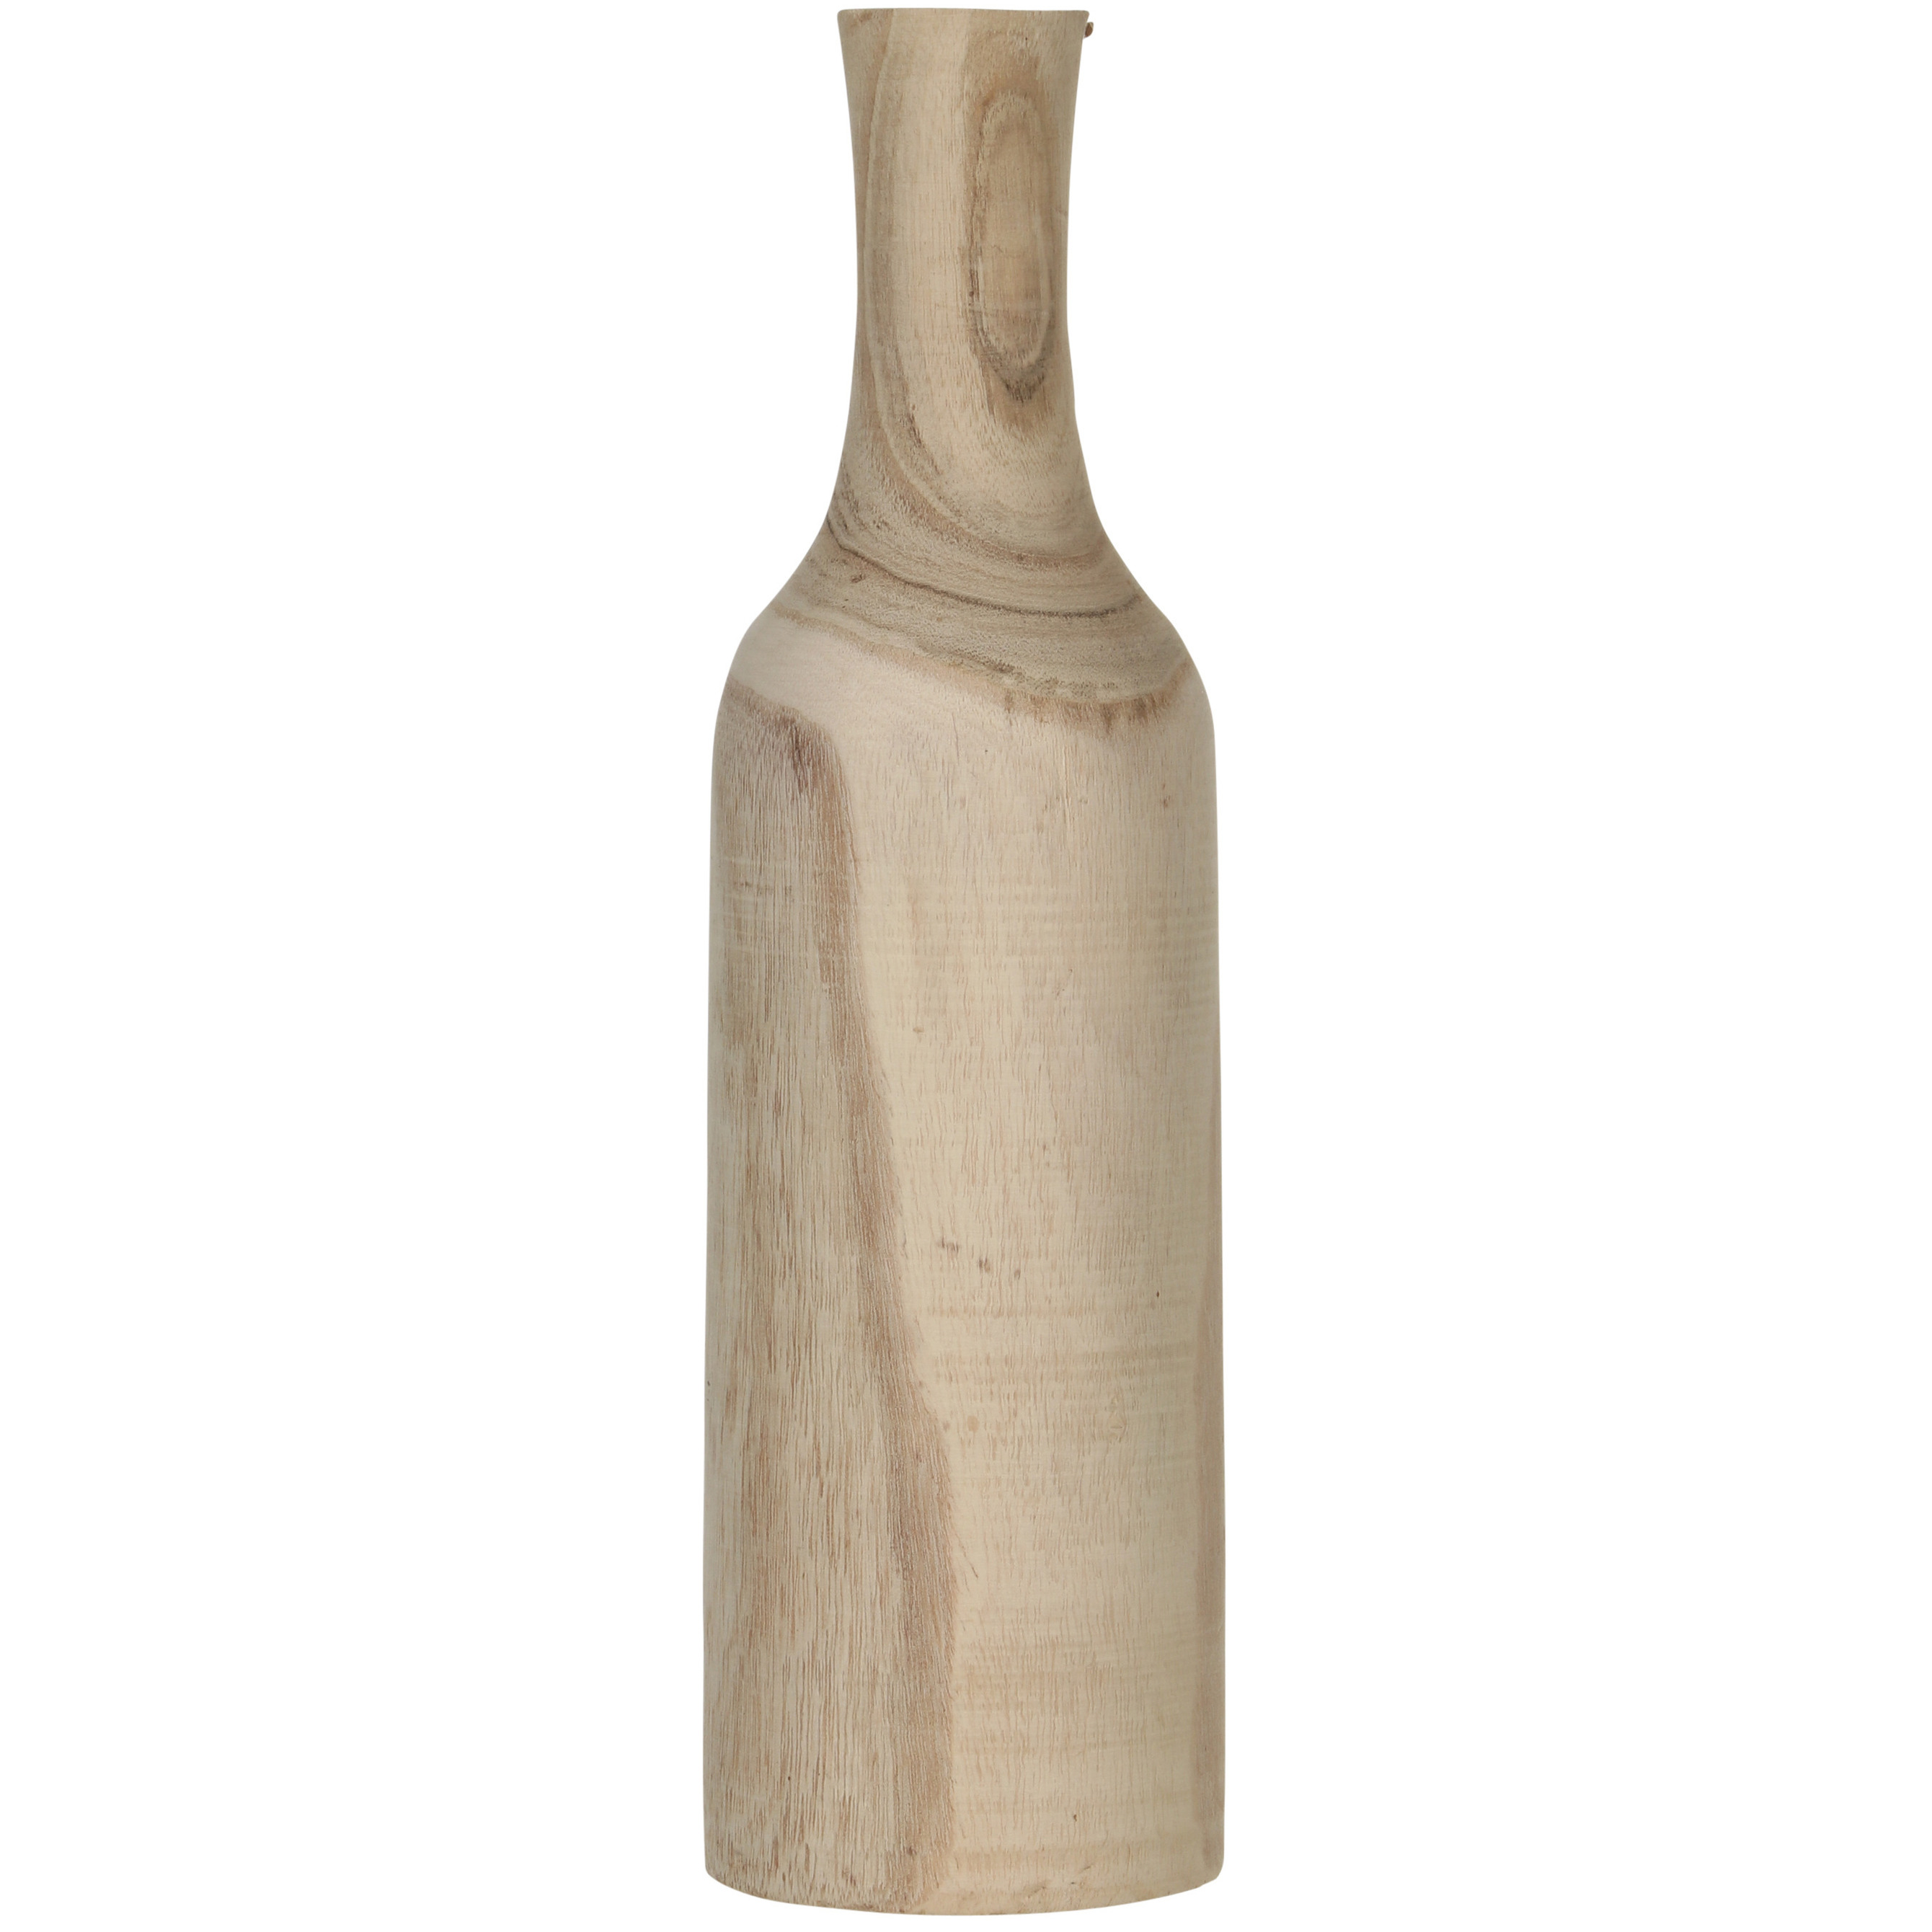 1x Decoratie fles vaas-vazen van hout 47 x 14 cm bruin